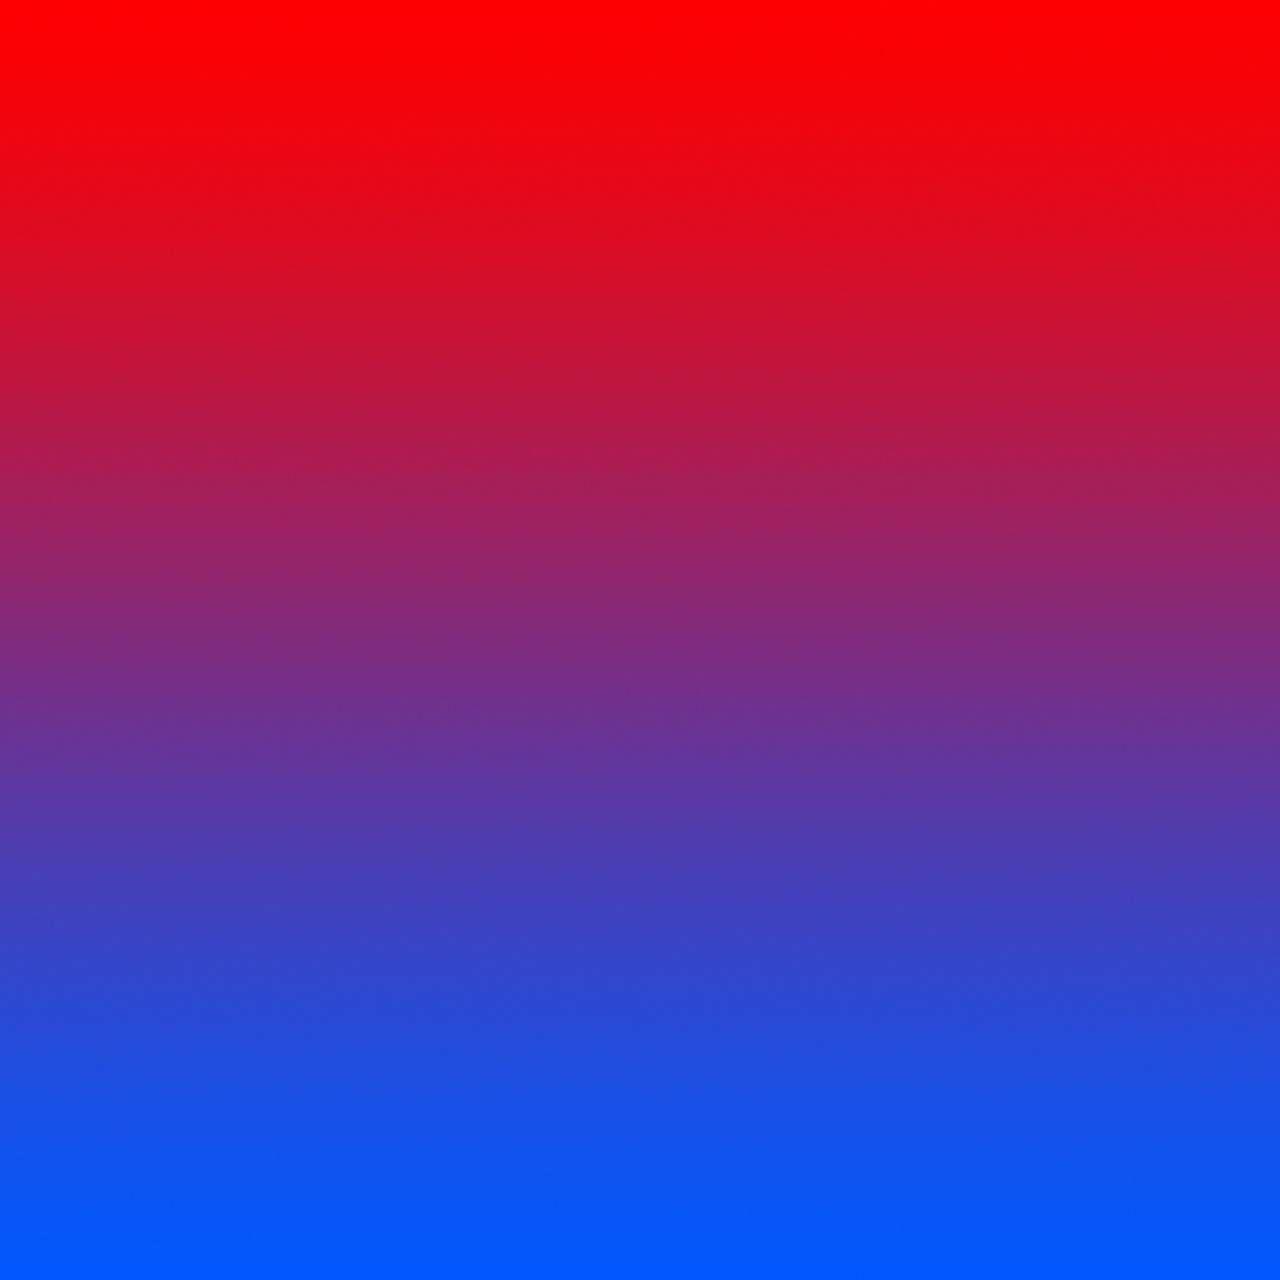 1280x1280 Red Blue Gradient hình nền